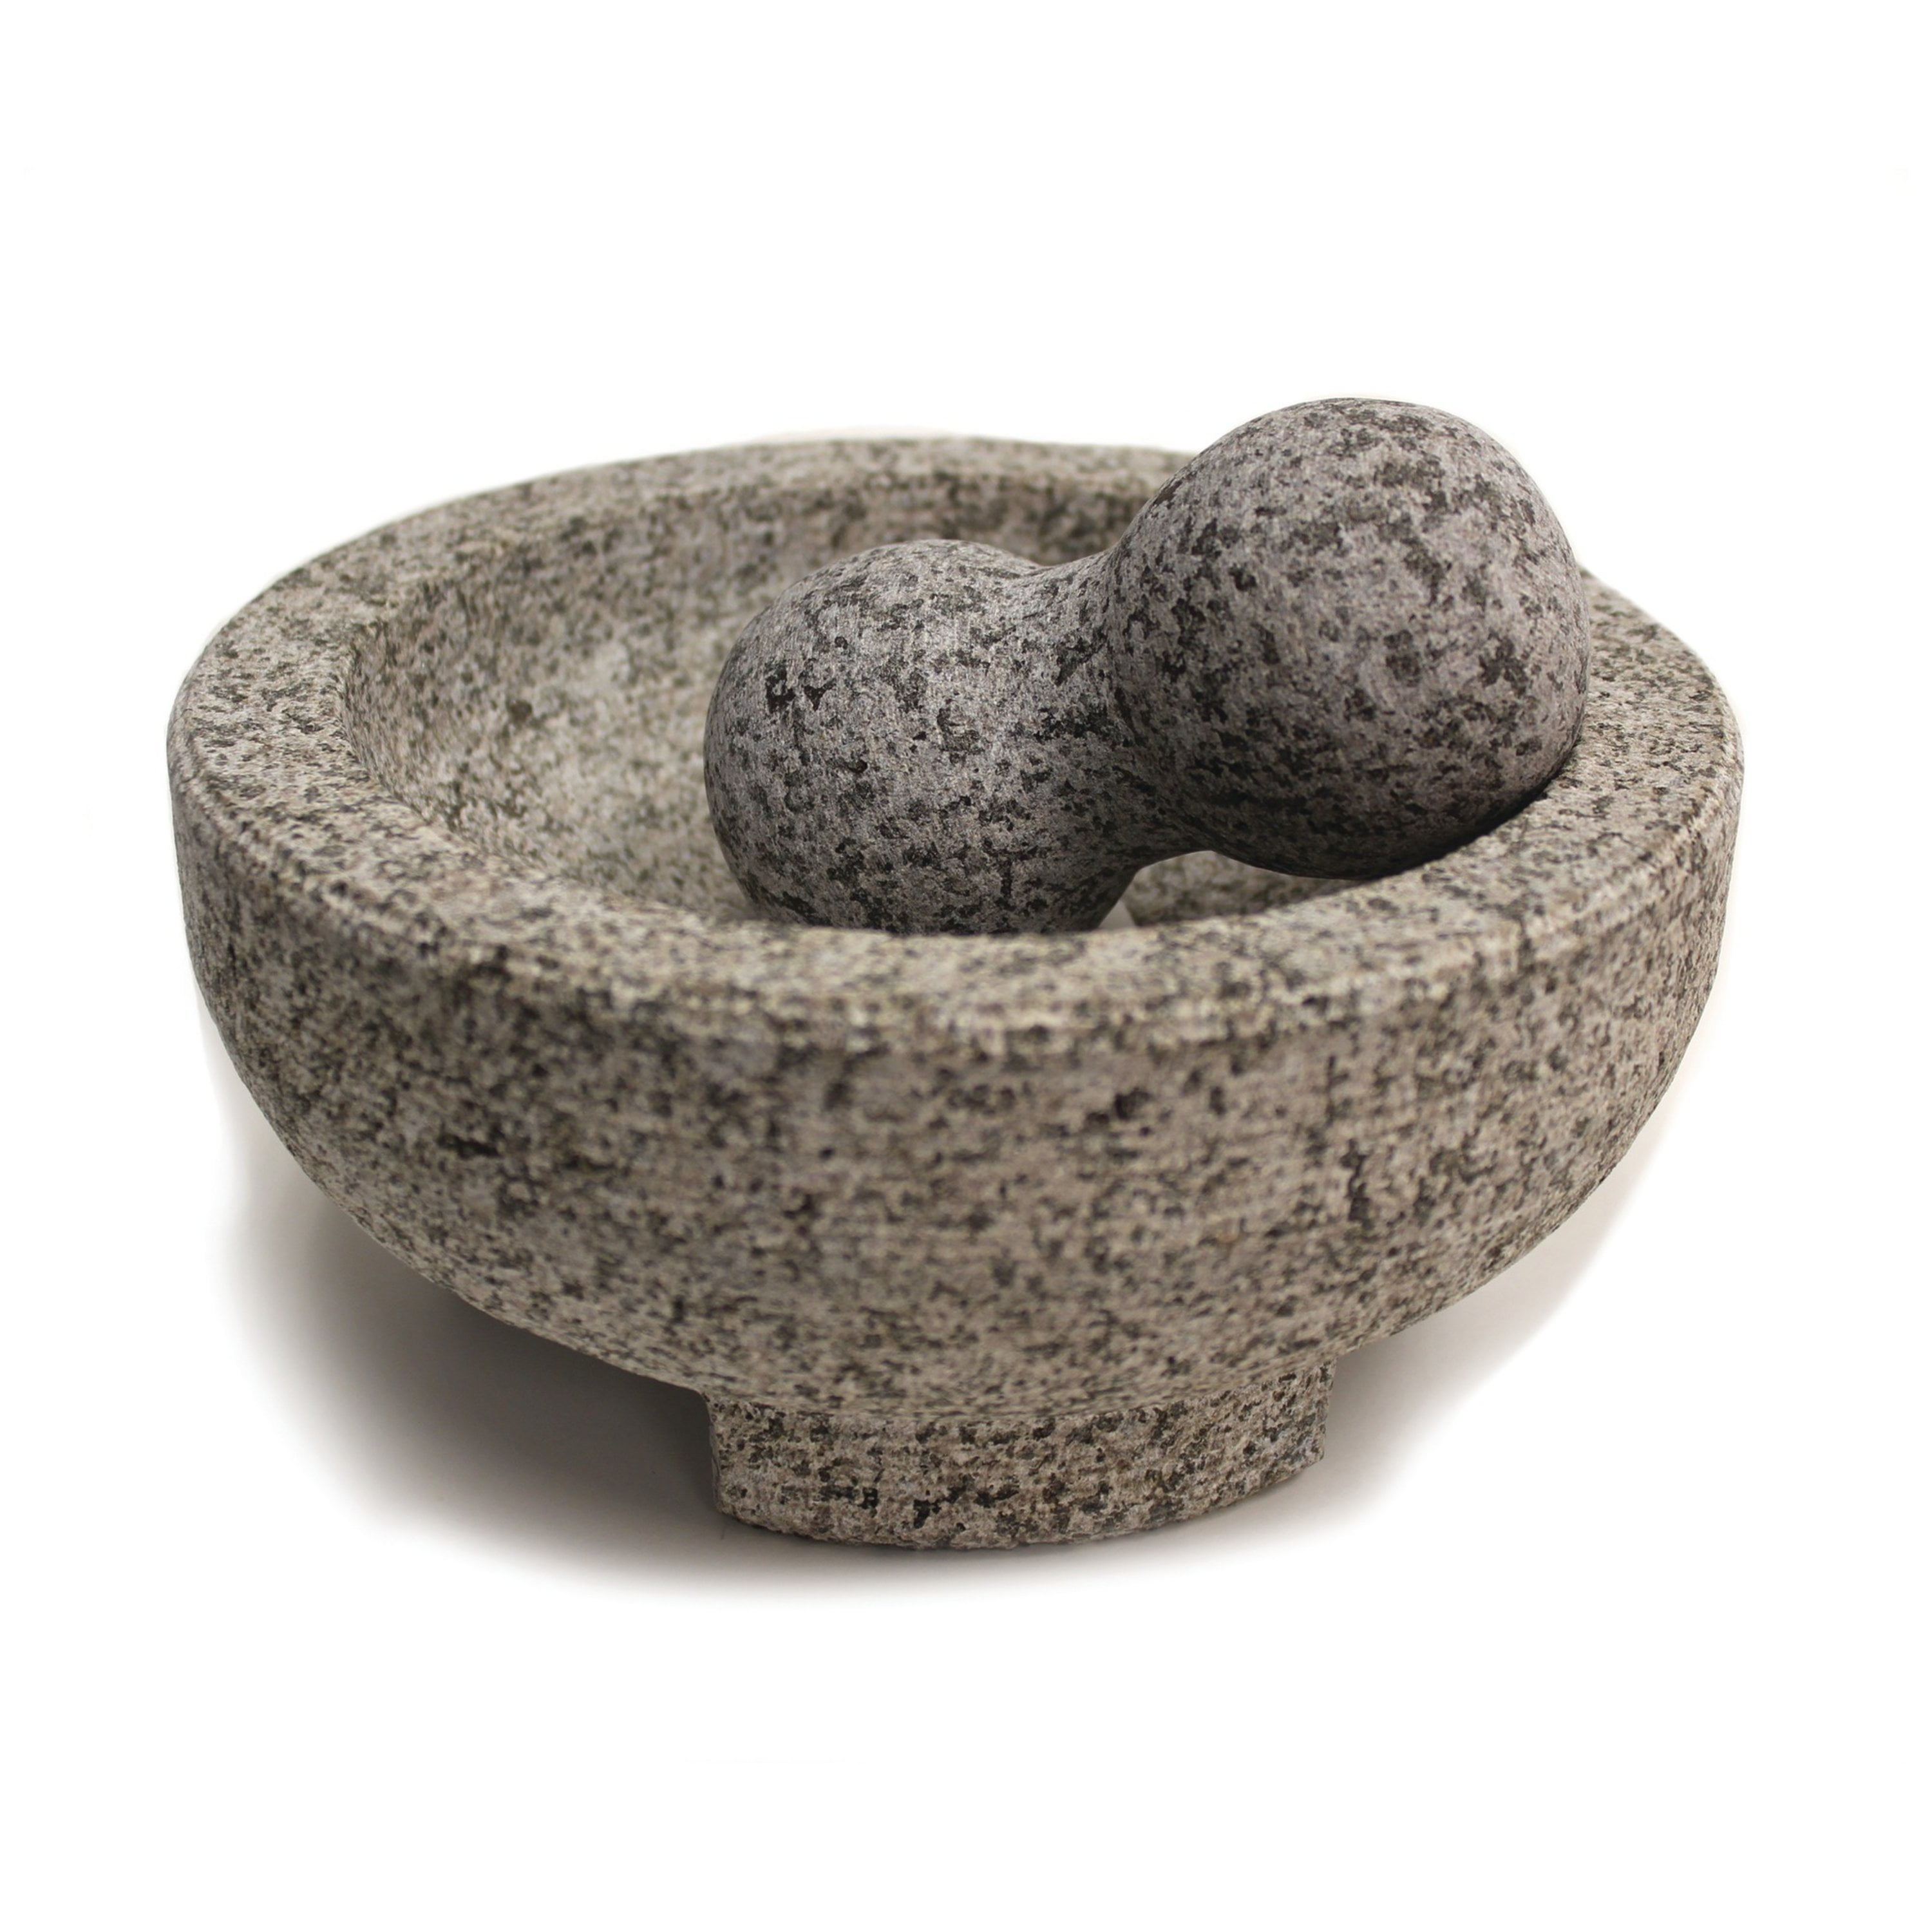 Bene Casa granite mortar and pestle set, 8.5-inch diameter, high-quality  granite